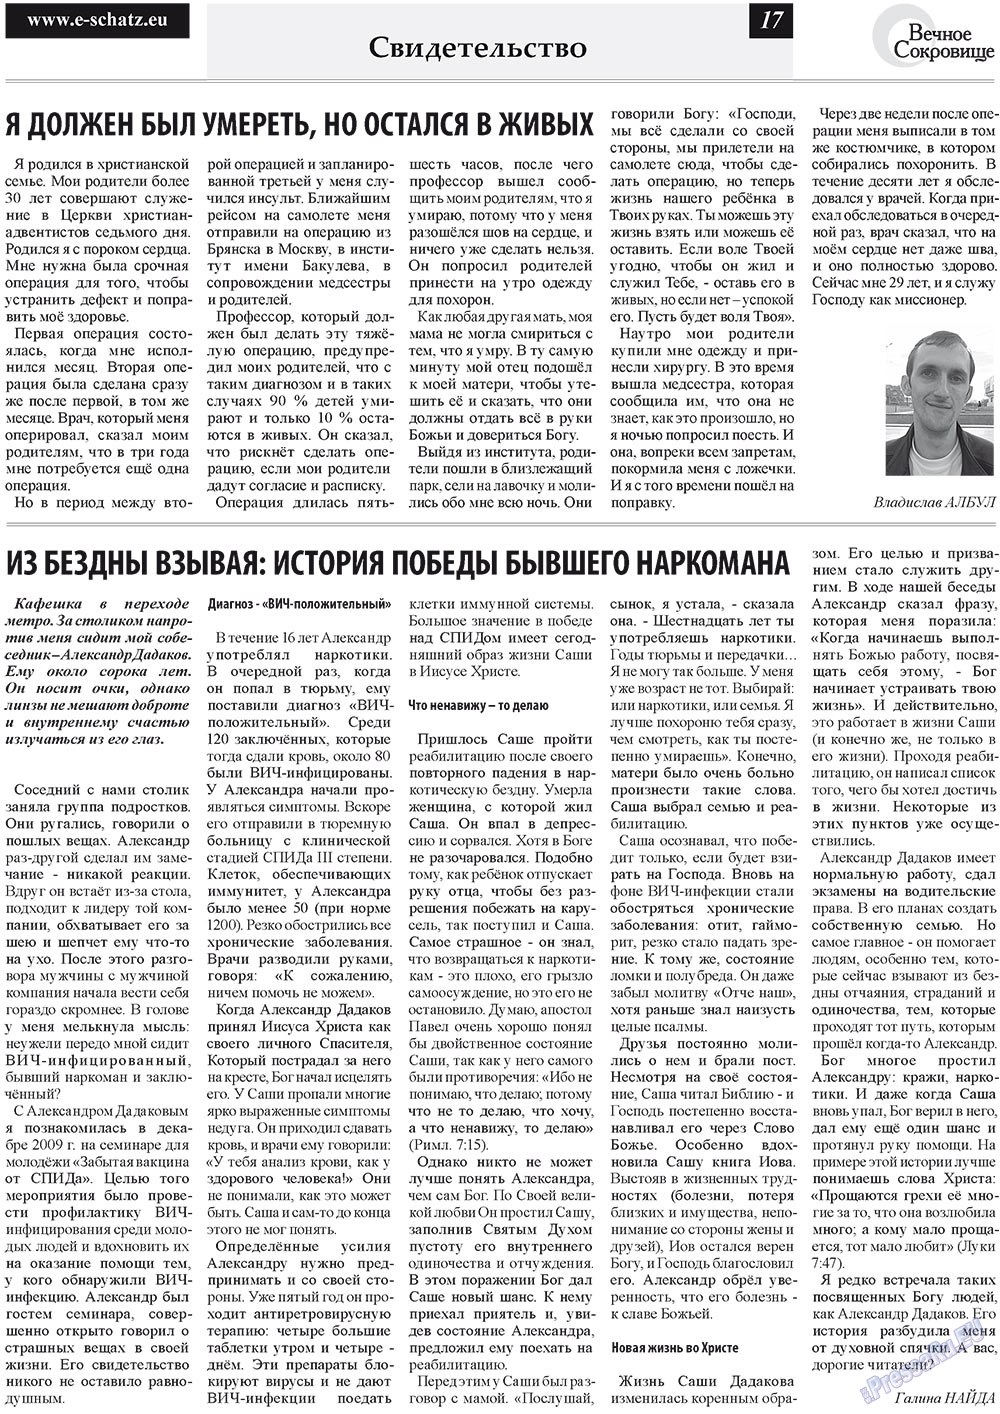 Вечное сокровище (газета). 2011 год, номер 3, стр. 17